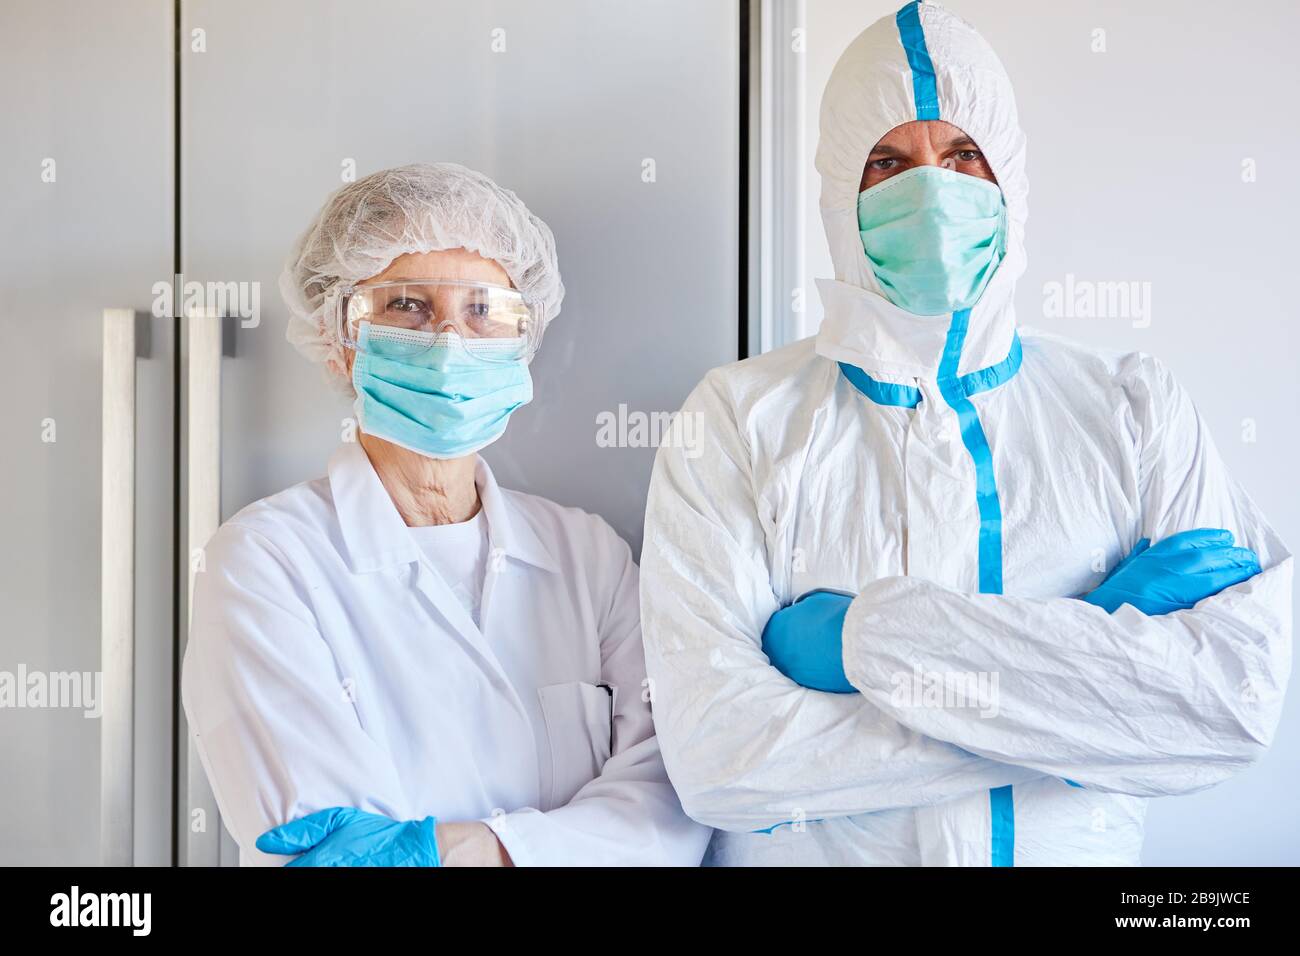 Empleados de control de enfermedades en ropa protectora durante la epidemia de coronavirus (Coivd-19) en una clínica Foto de stock